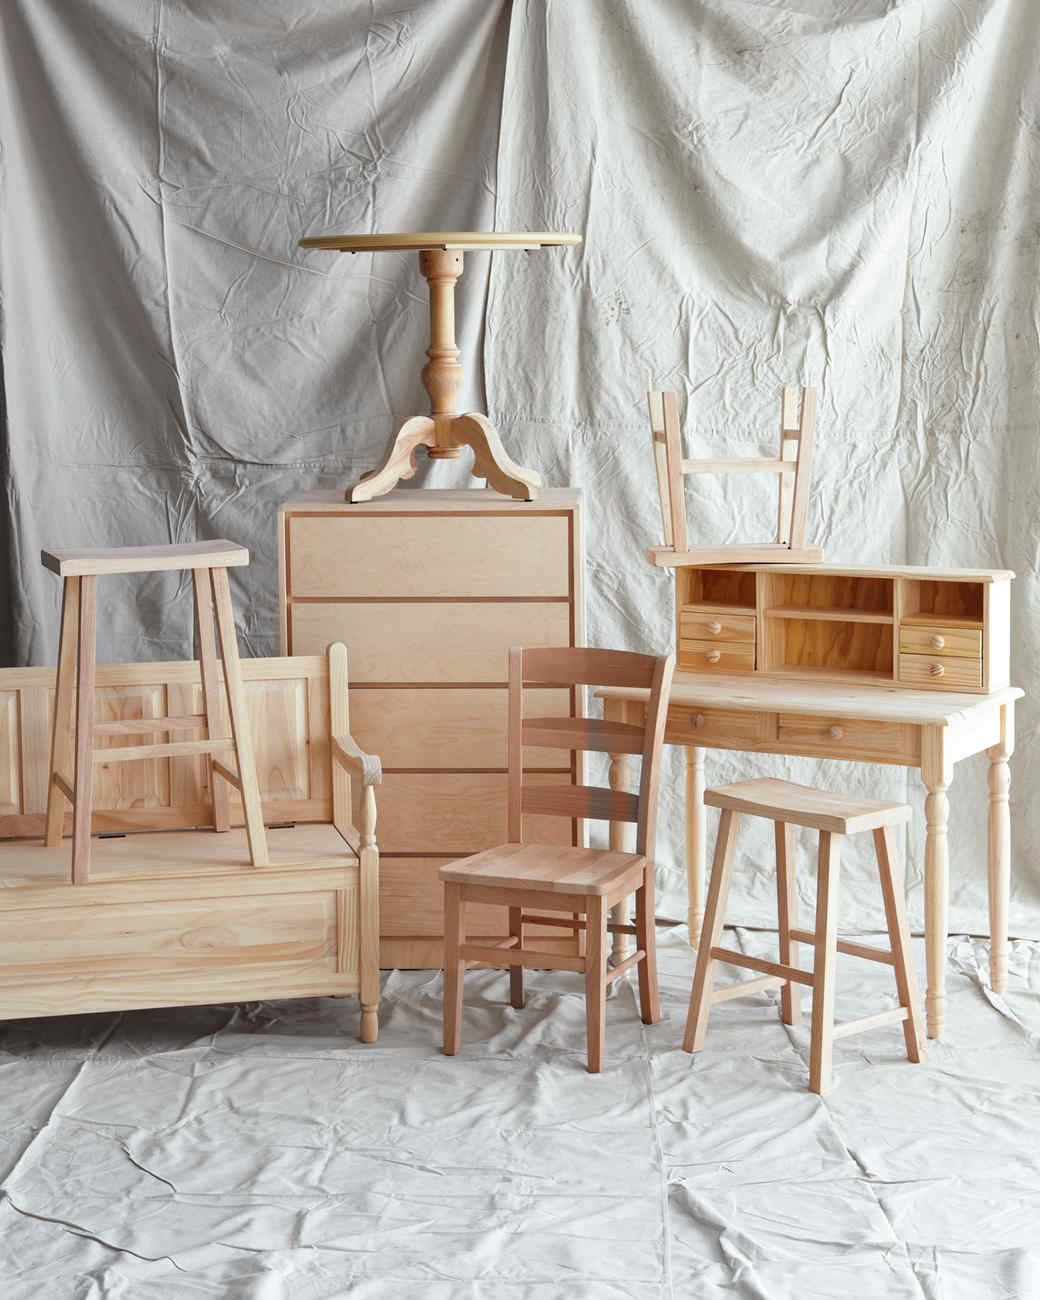 Customizing Unfinished Furniture | Martha Stewart